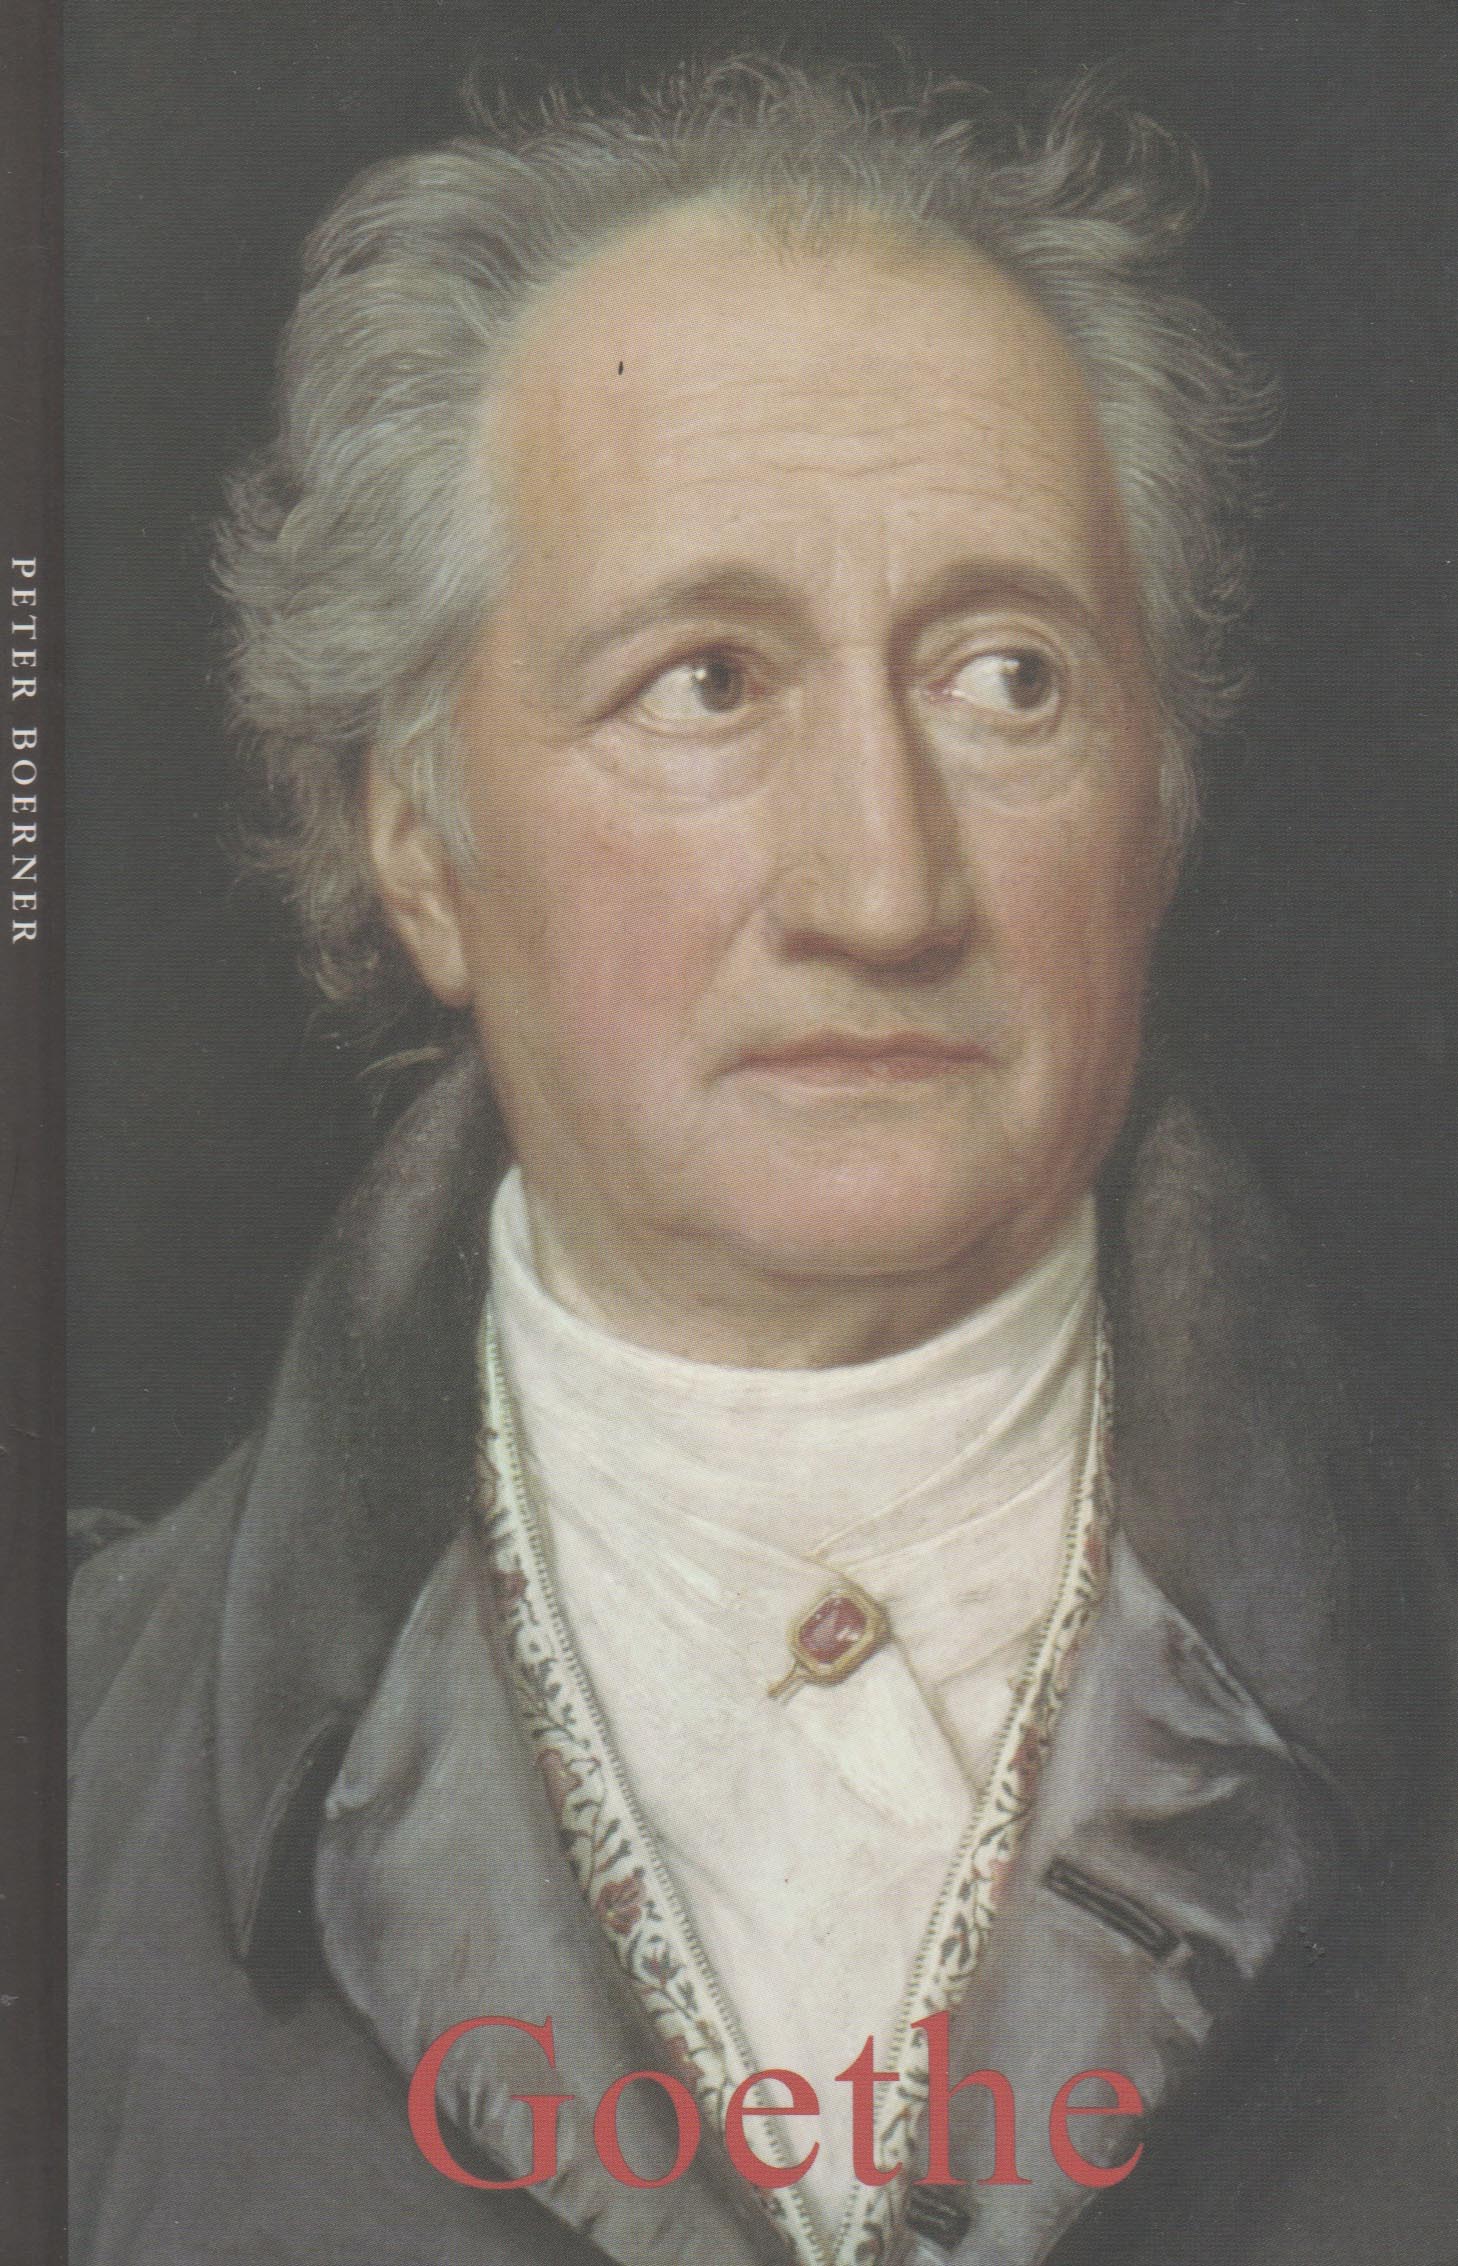 Goethe (Peter Boerner)